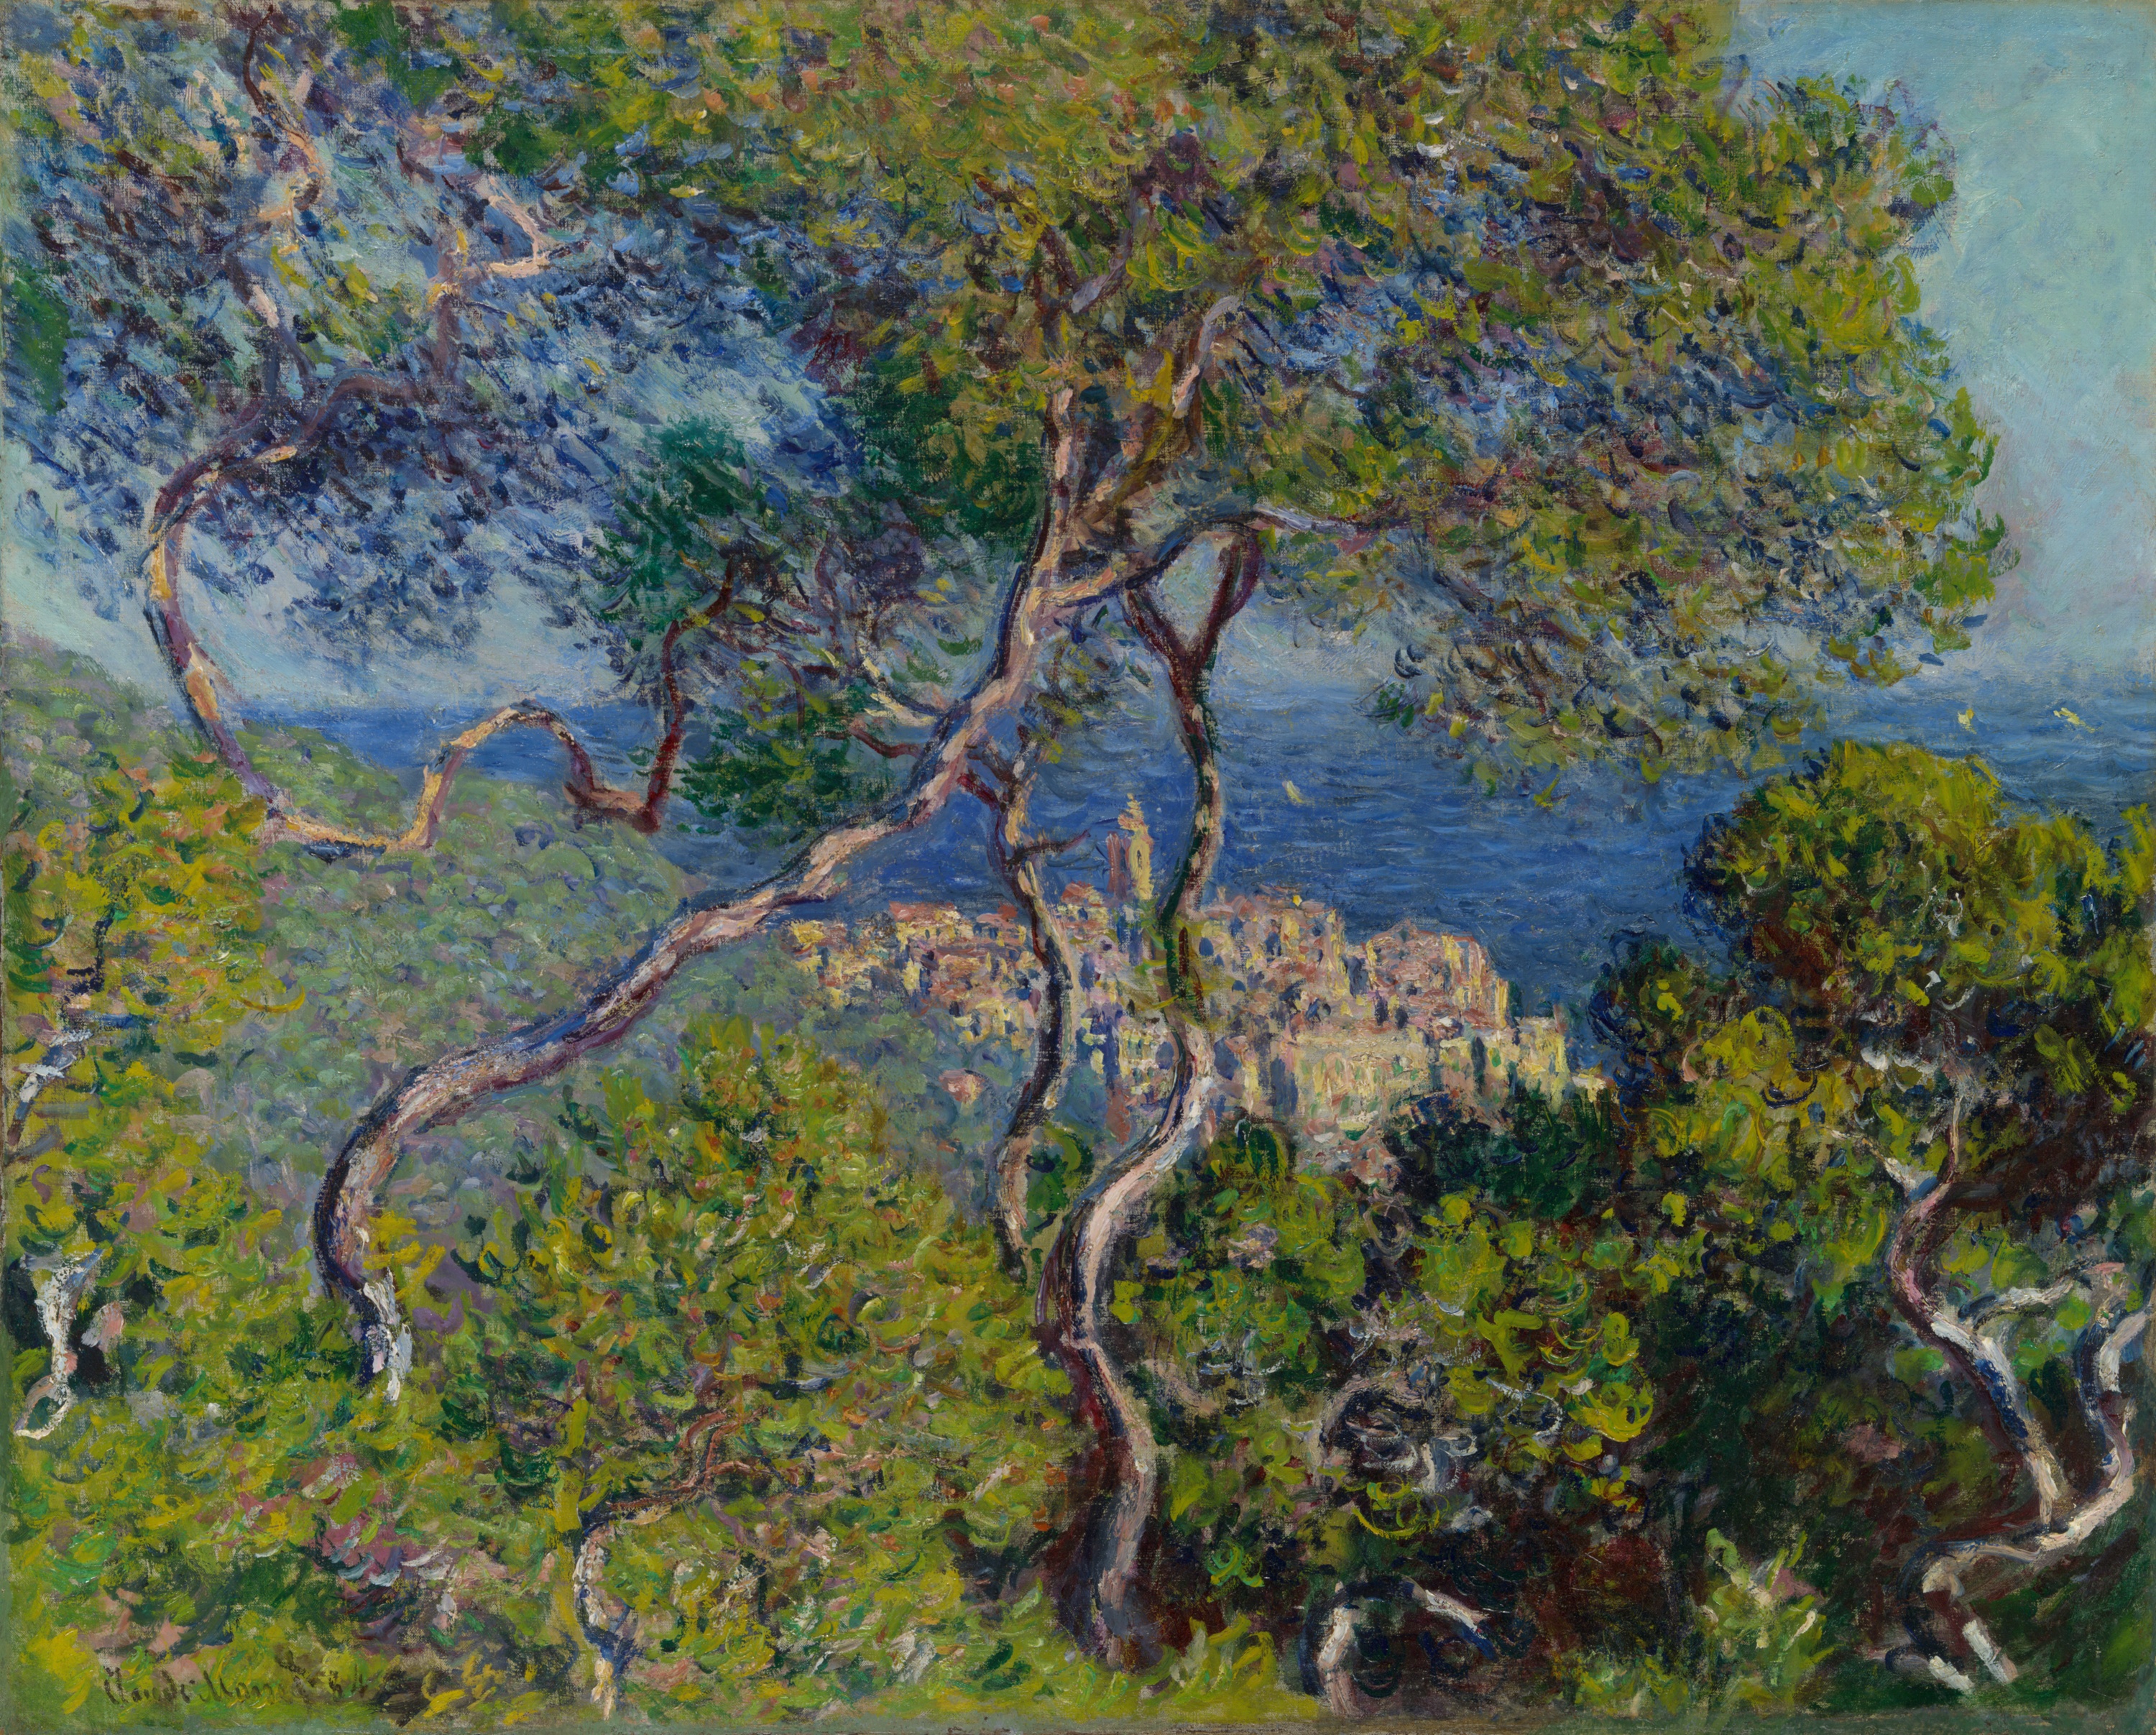 Bordighera by Claude Monet - 1884 - 65 × 80.8 cm Art Institute of Chicago